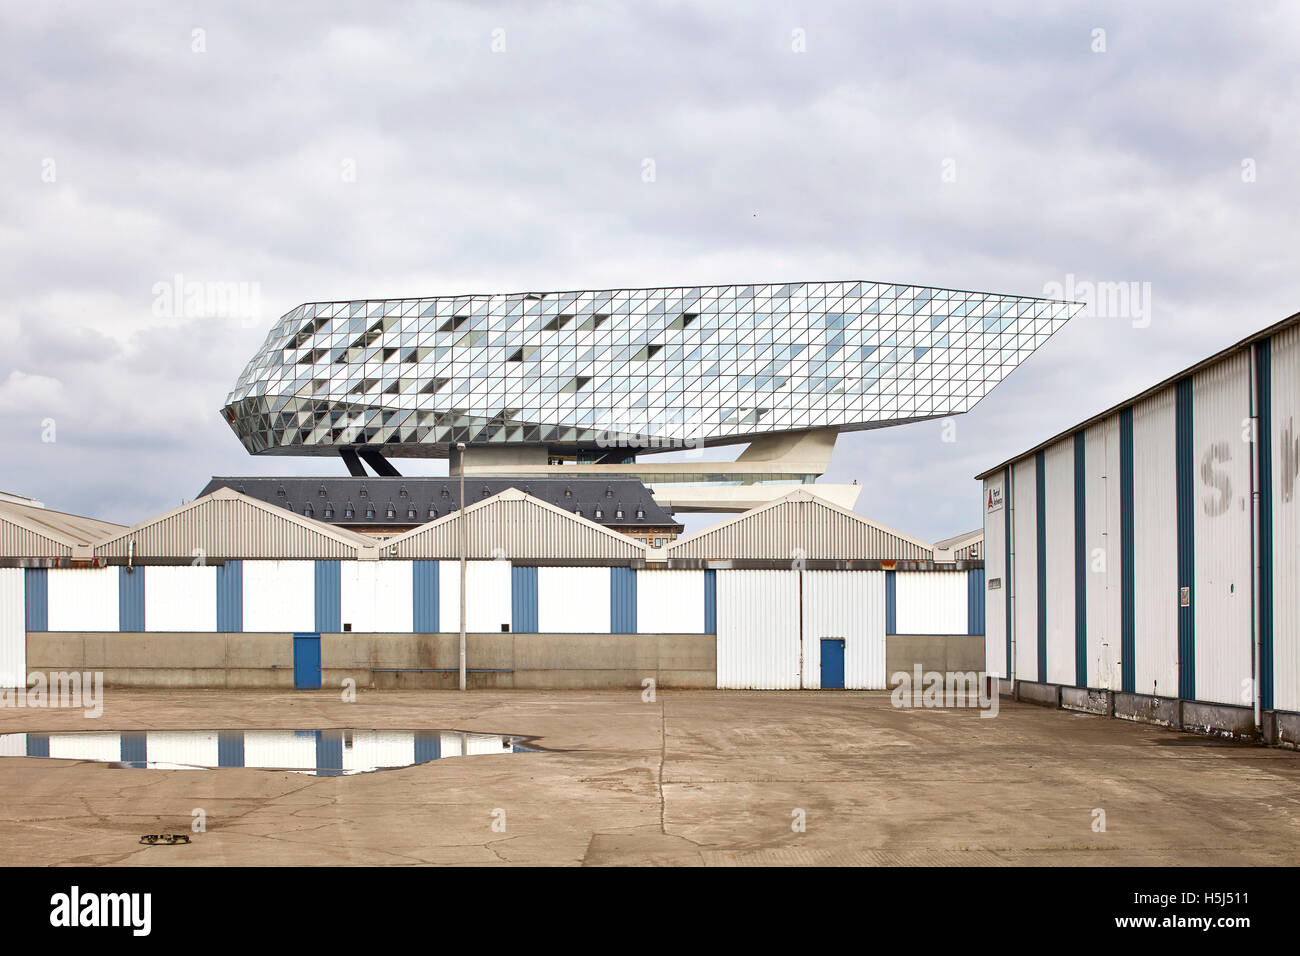 Vista contestuale dal sito del dock. Casa porta ad Anversa, Belgio. Architetto: Zaha Hadid Architects, 2016. Foto Stock